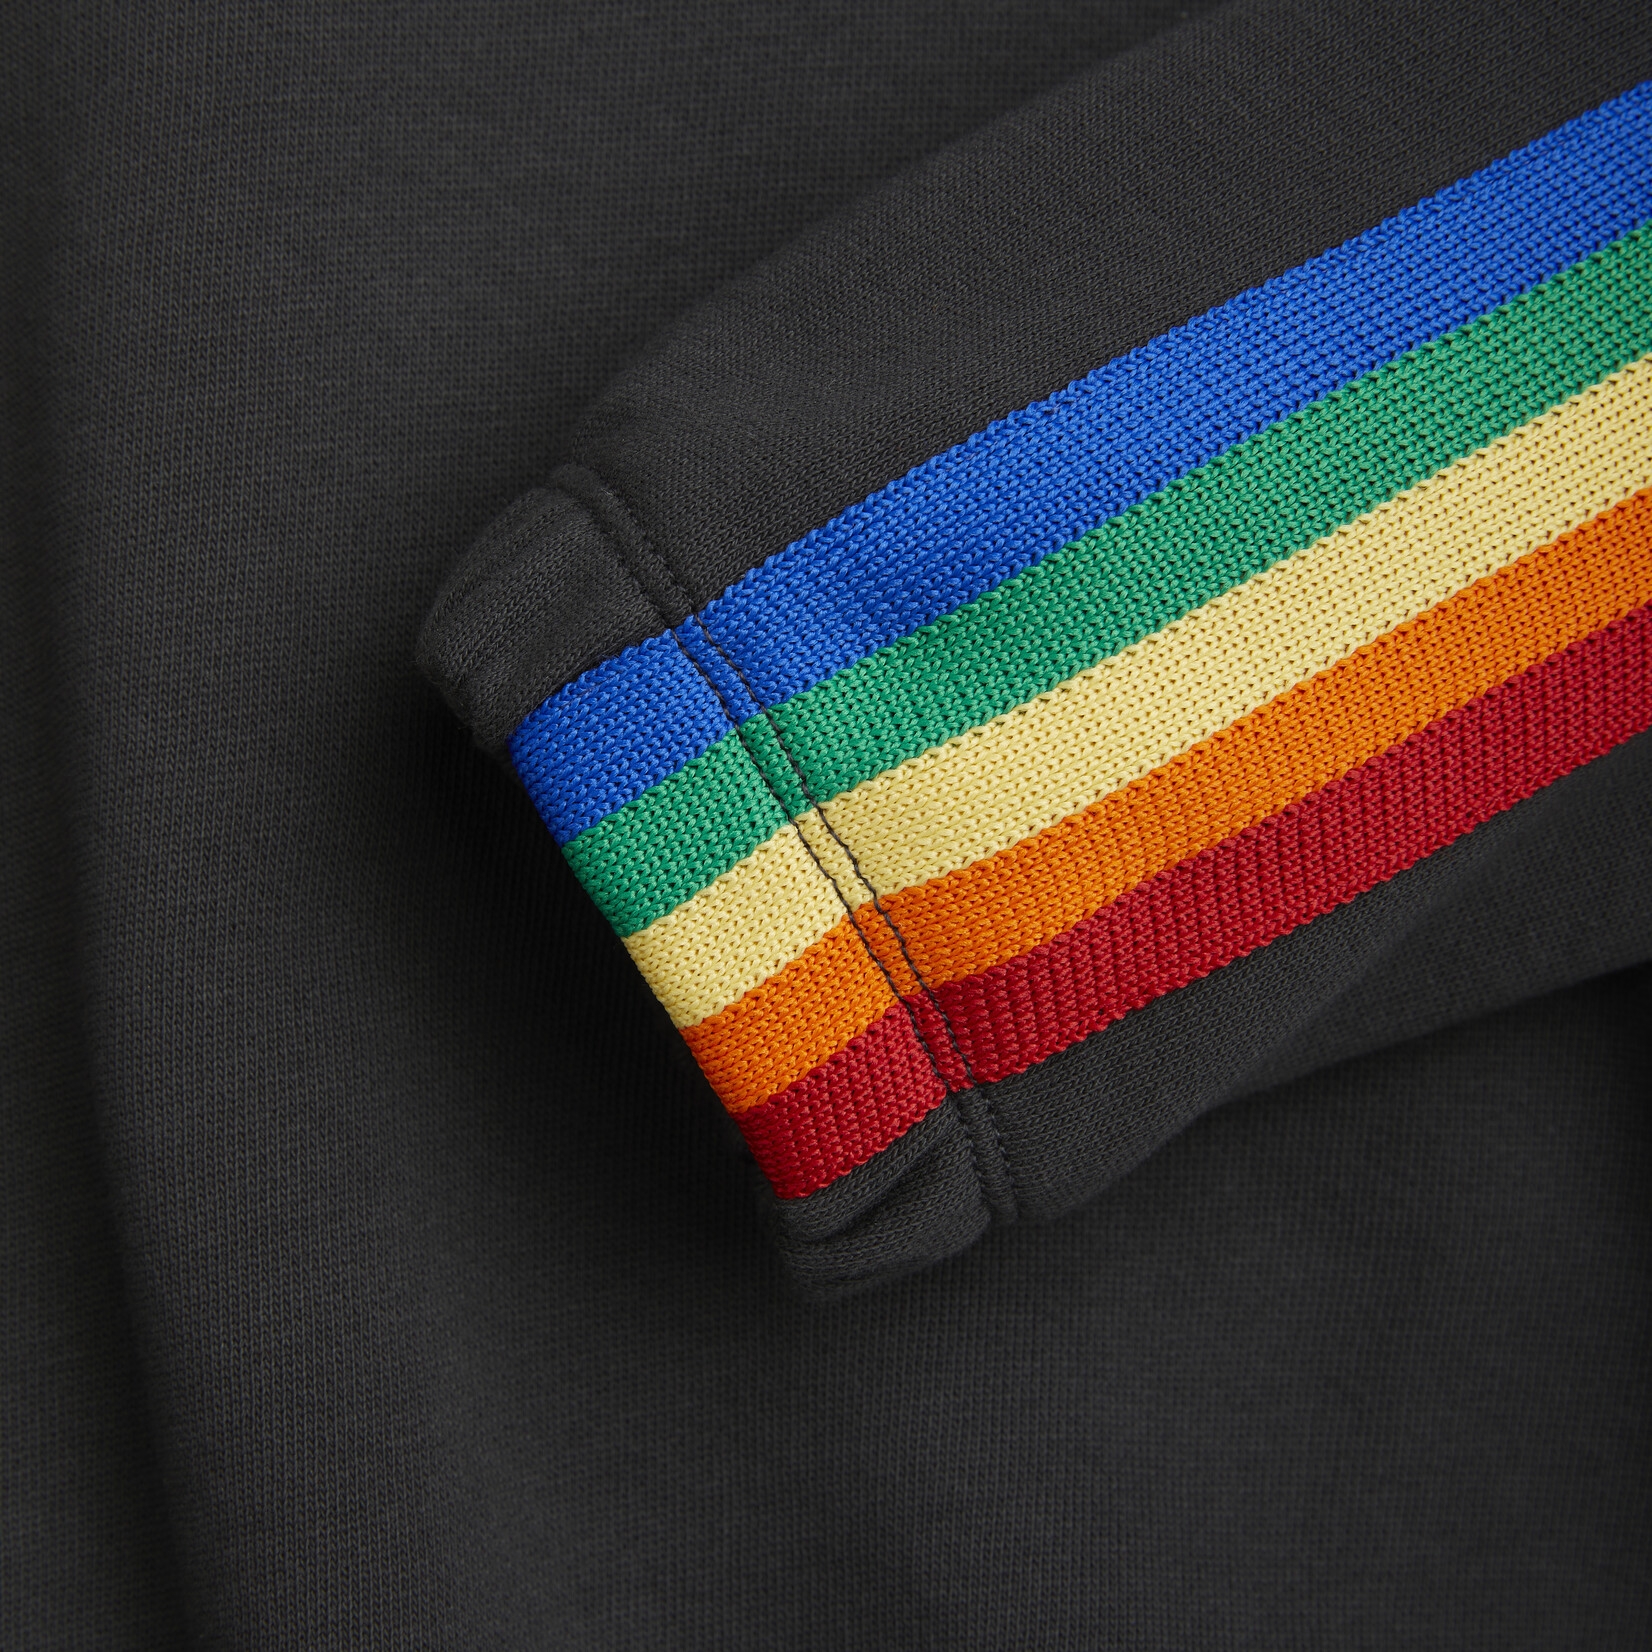 Mini Rodini Rainbow stripe sweatshirt